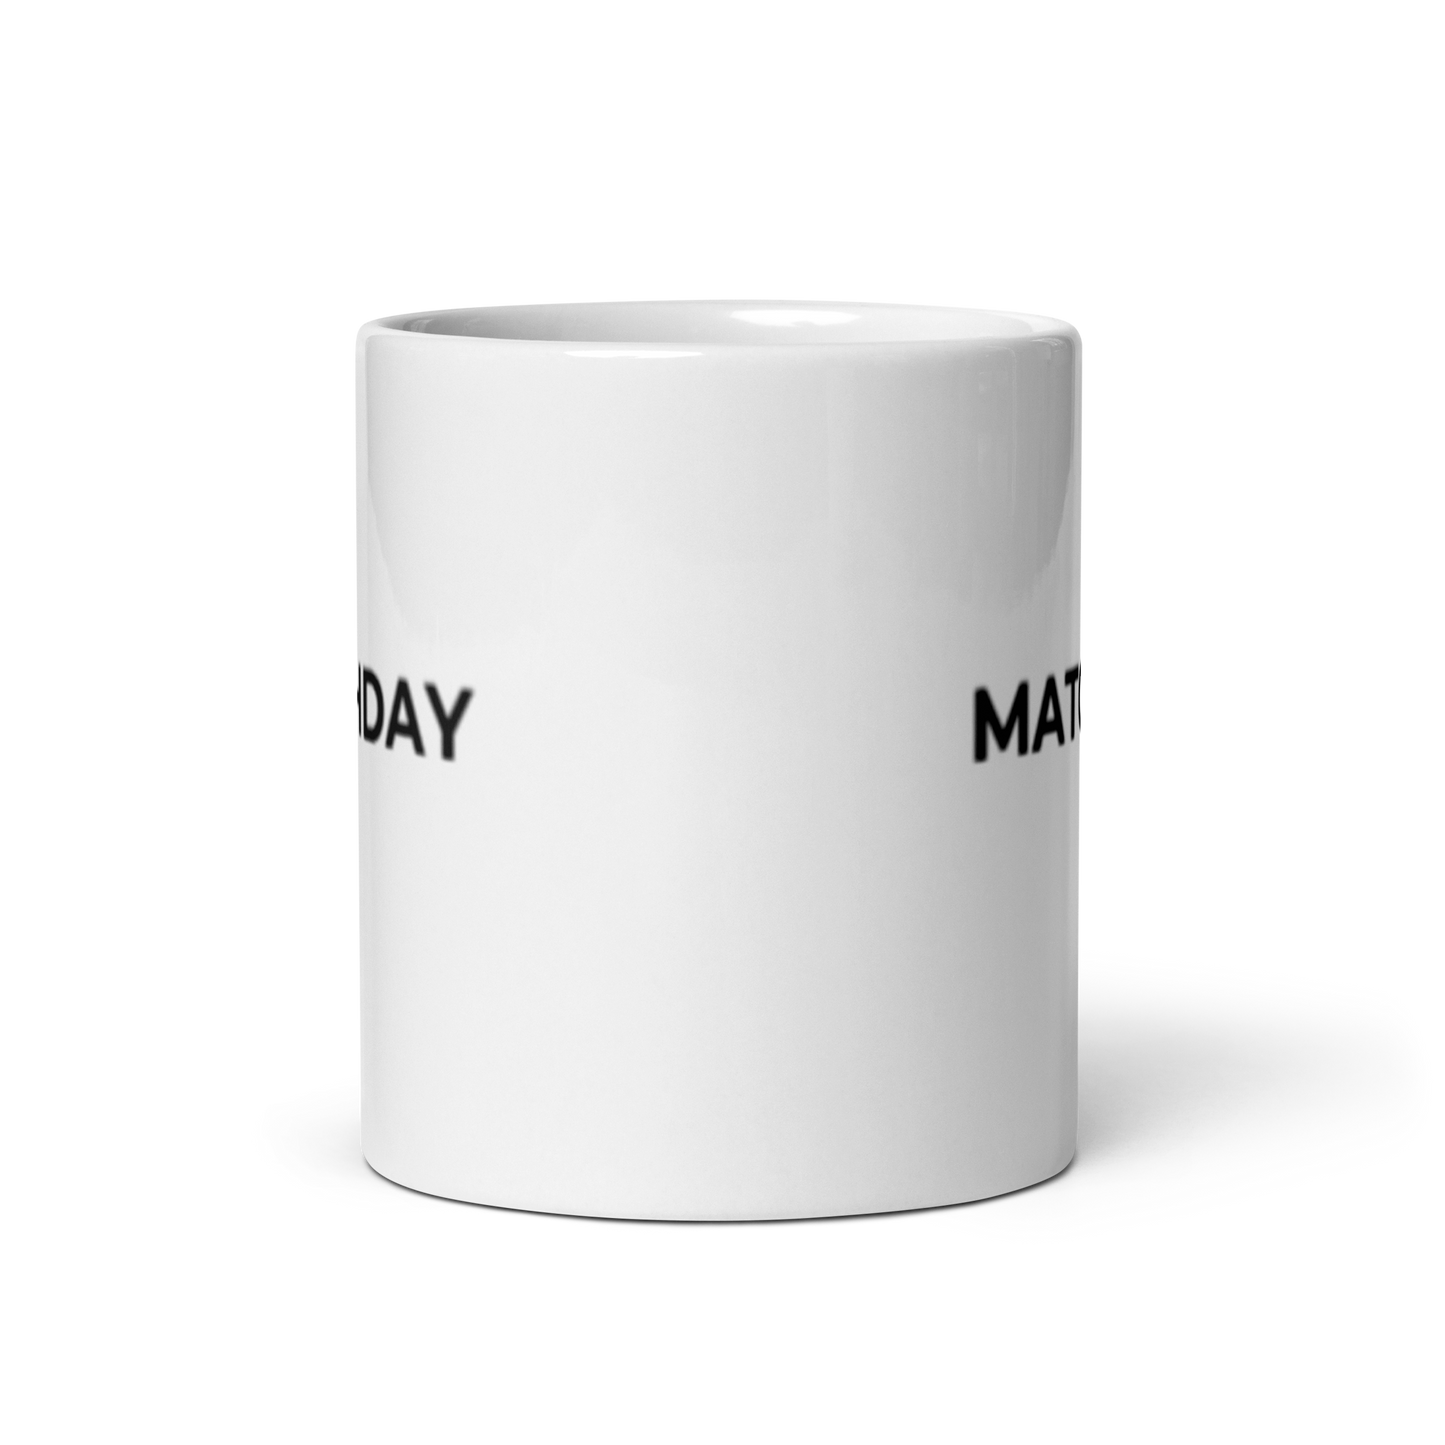 White MATCHDAY mug